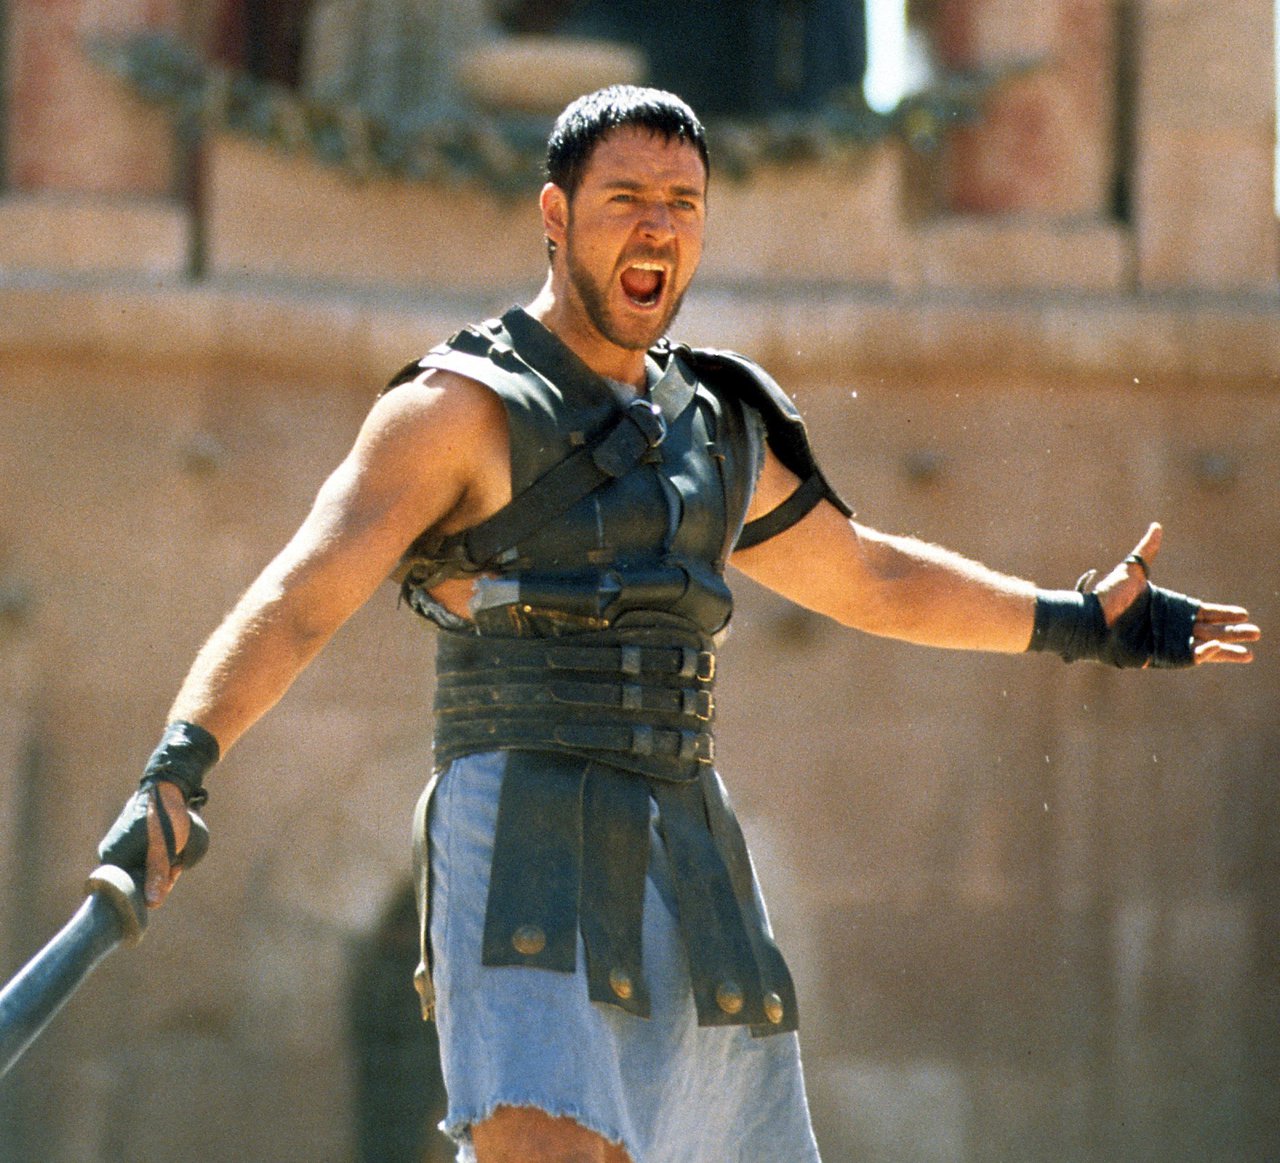 Kedysi svalnatý Gladiátor, Russel Crowe, očaroval vypracovanou postavou.